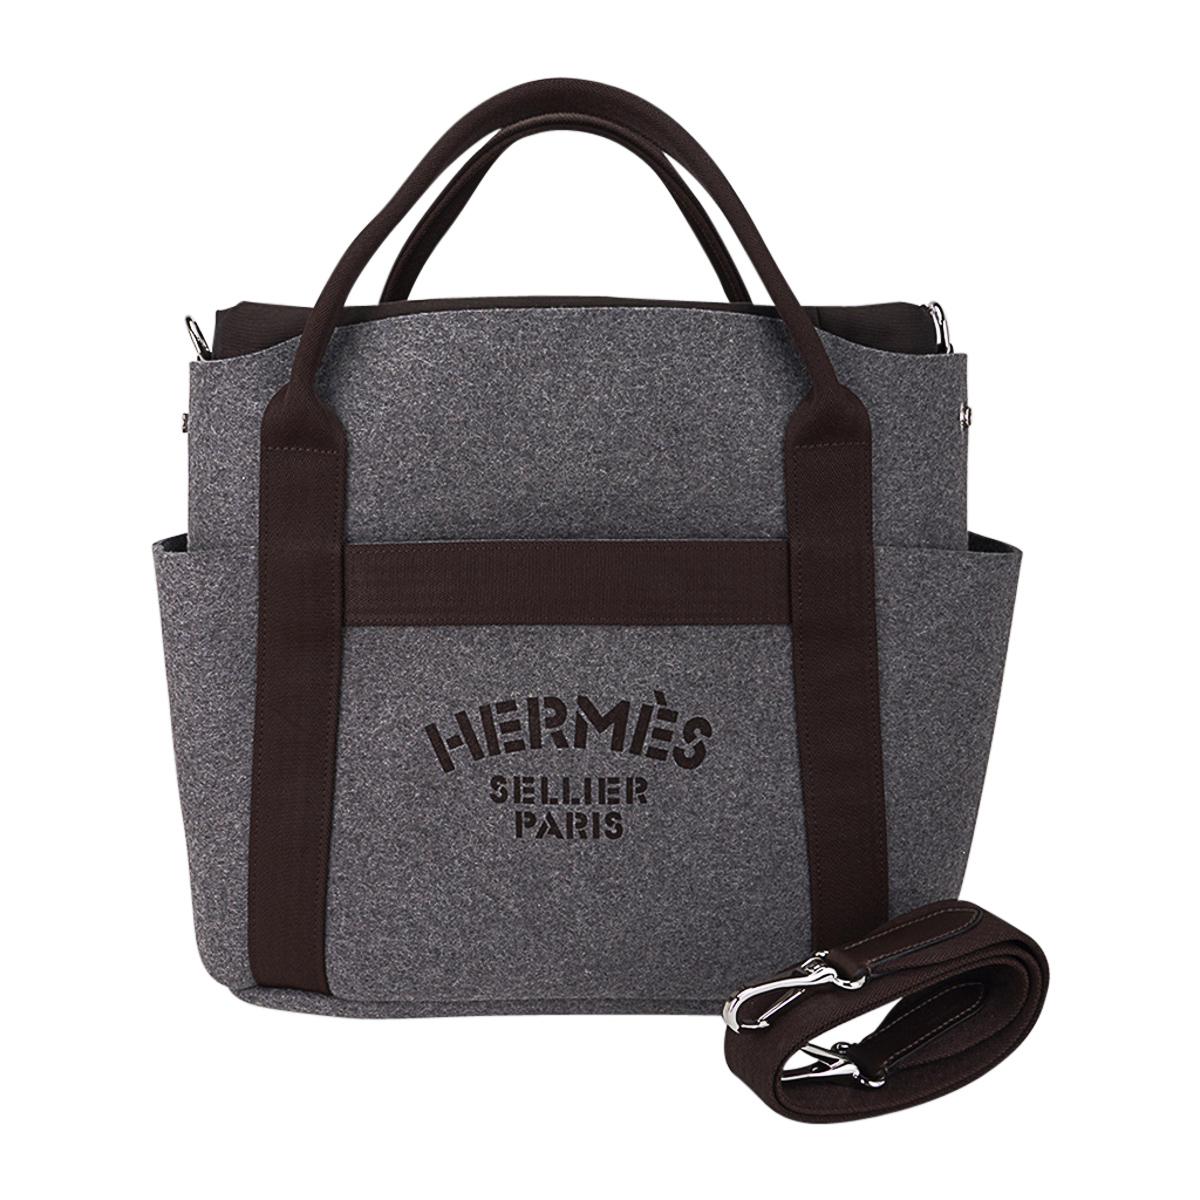 Hermes Tote Sac de Pansage Grooming Bag Gray Feutre/ Brown at